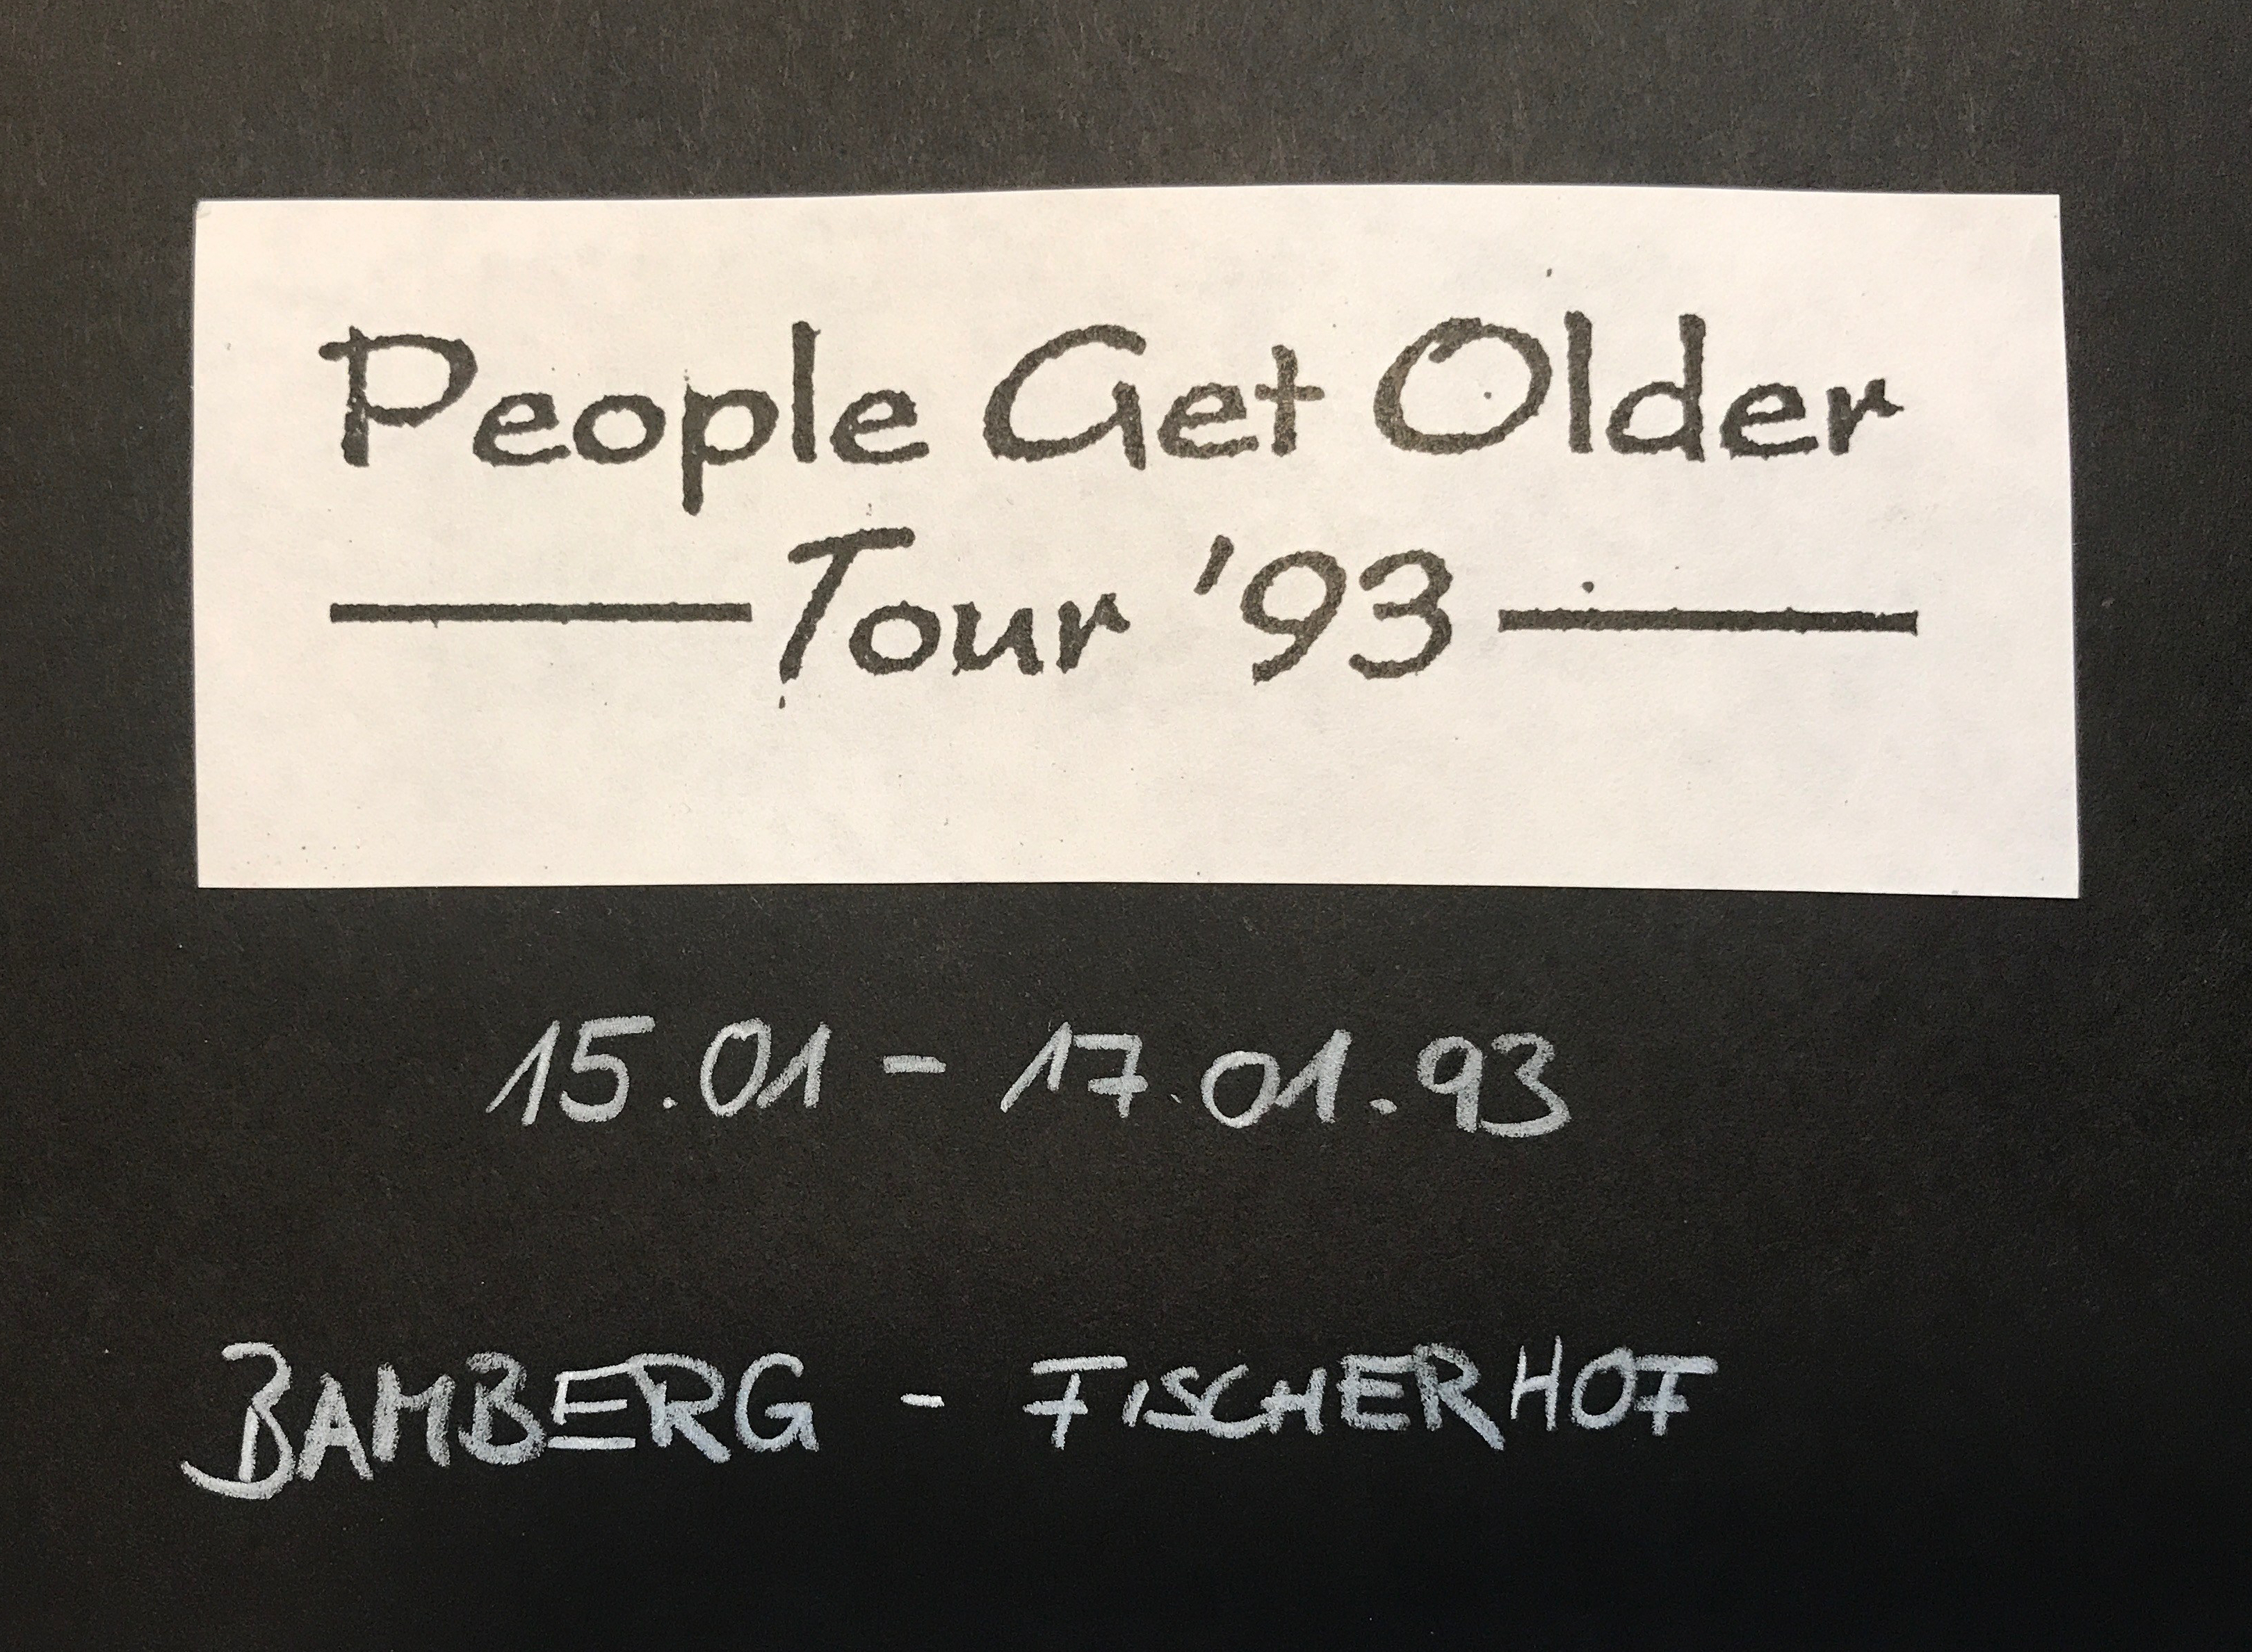 ‚People Get Older‘ Tour ’93